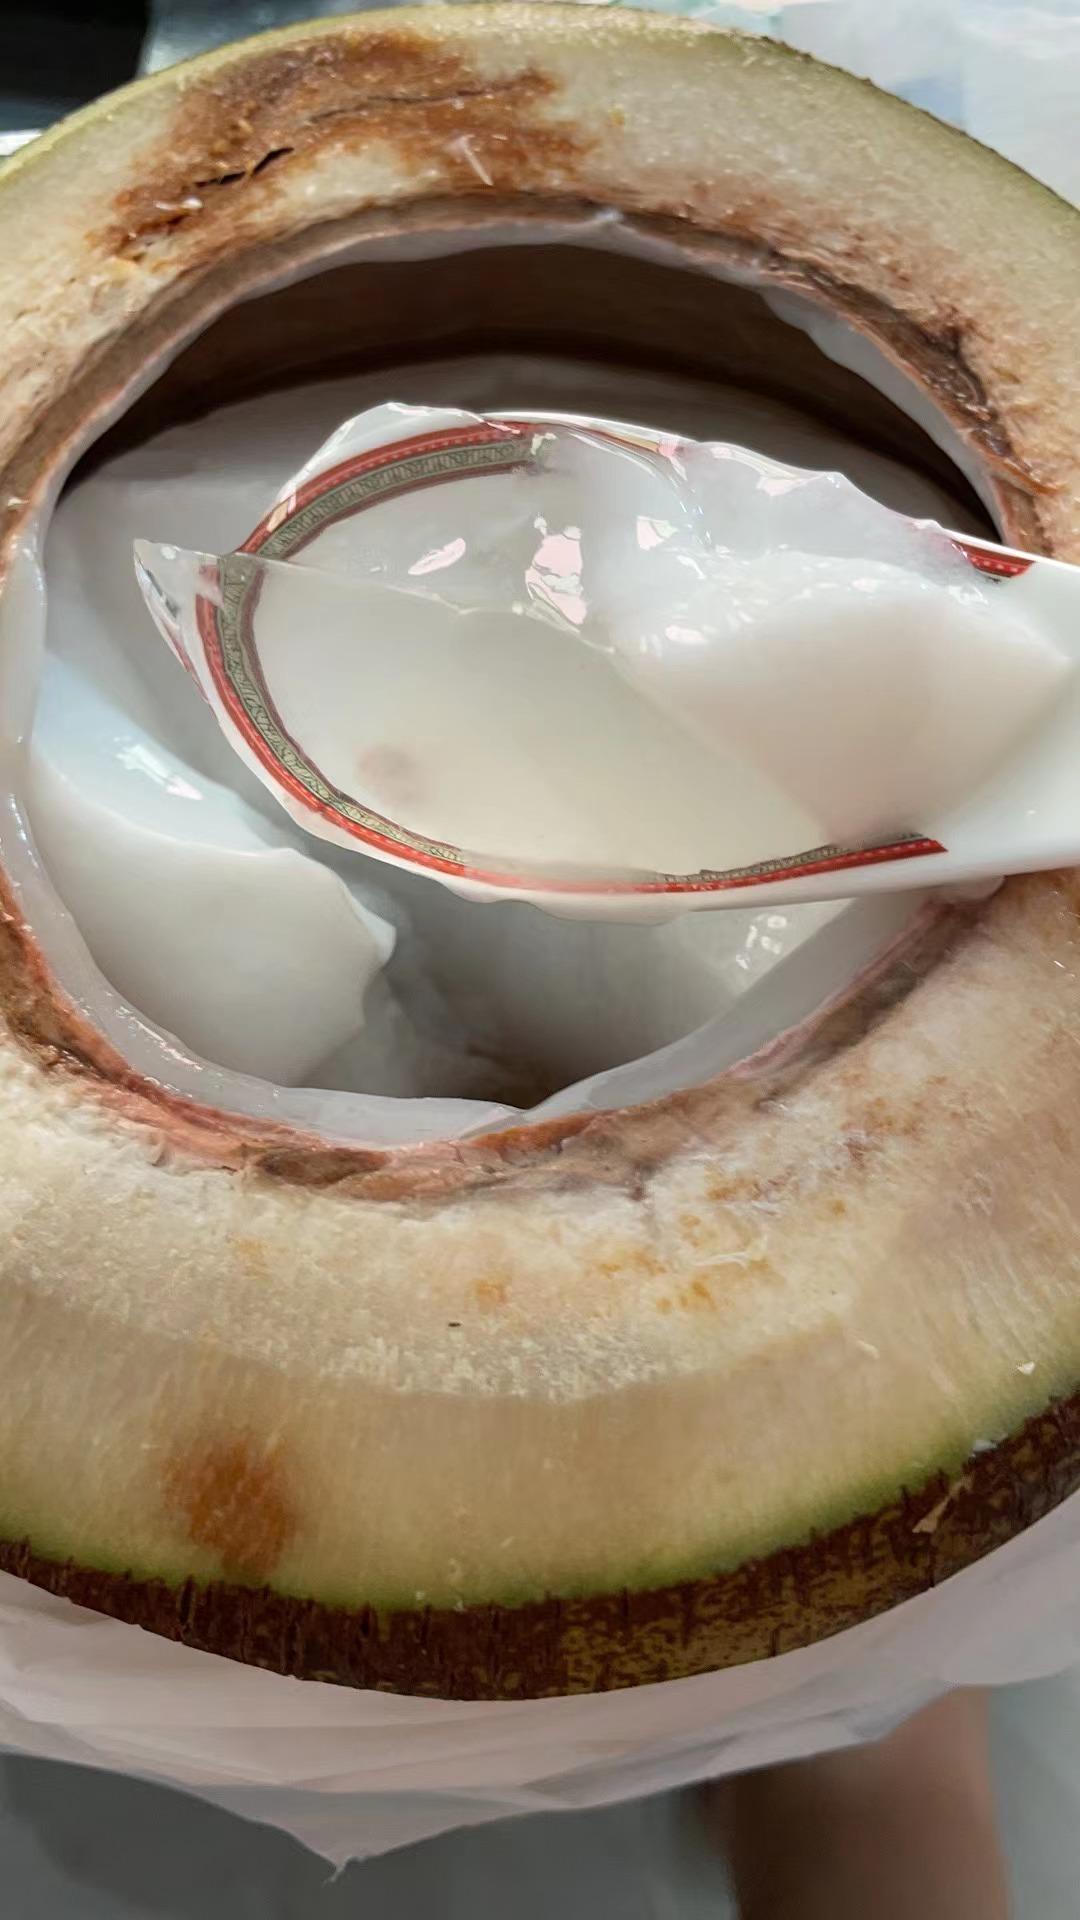 椰子怎么吃椰汁和椰肉，海南人教你椰子的食用方法 - 唐山味儿